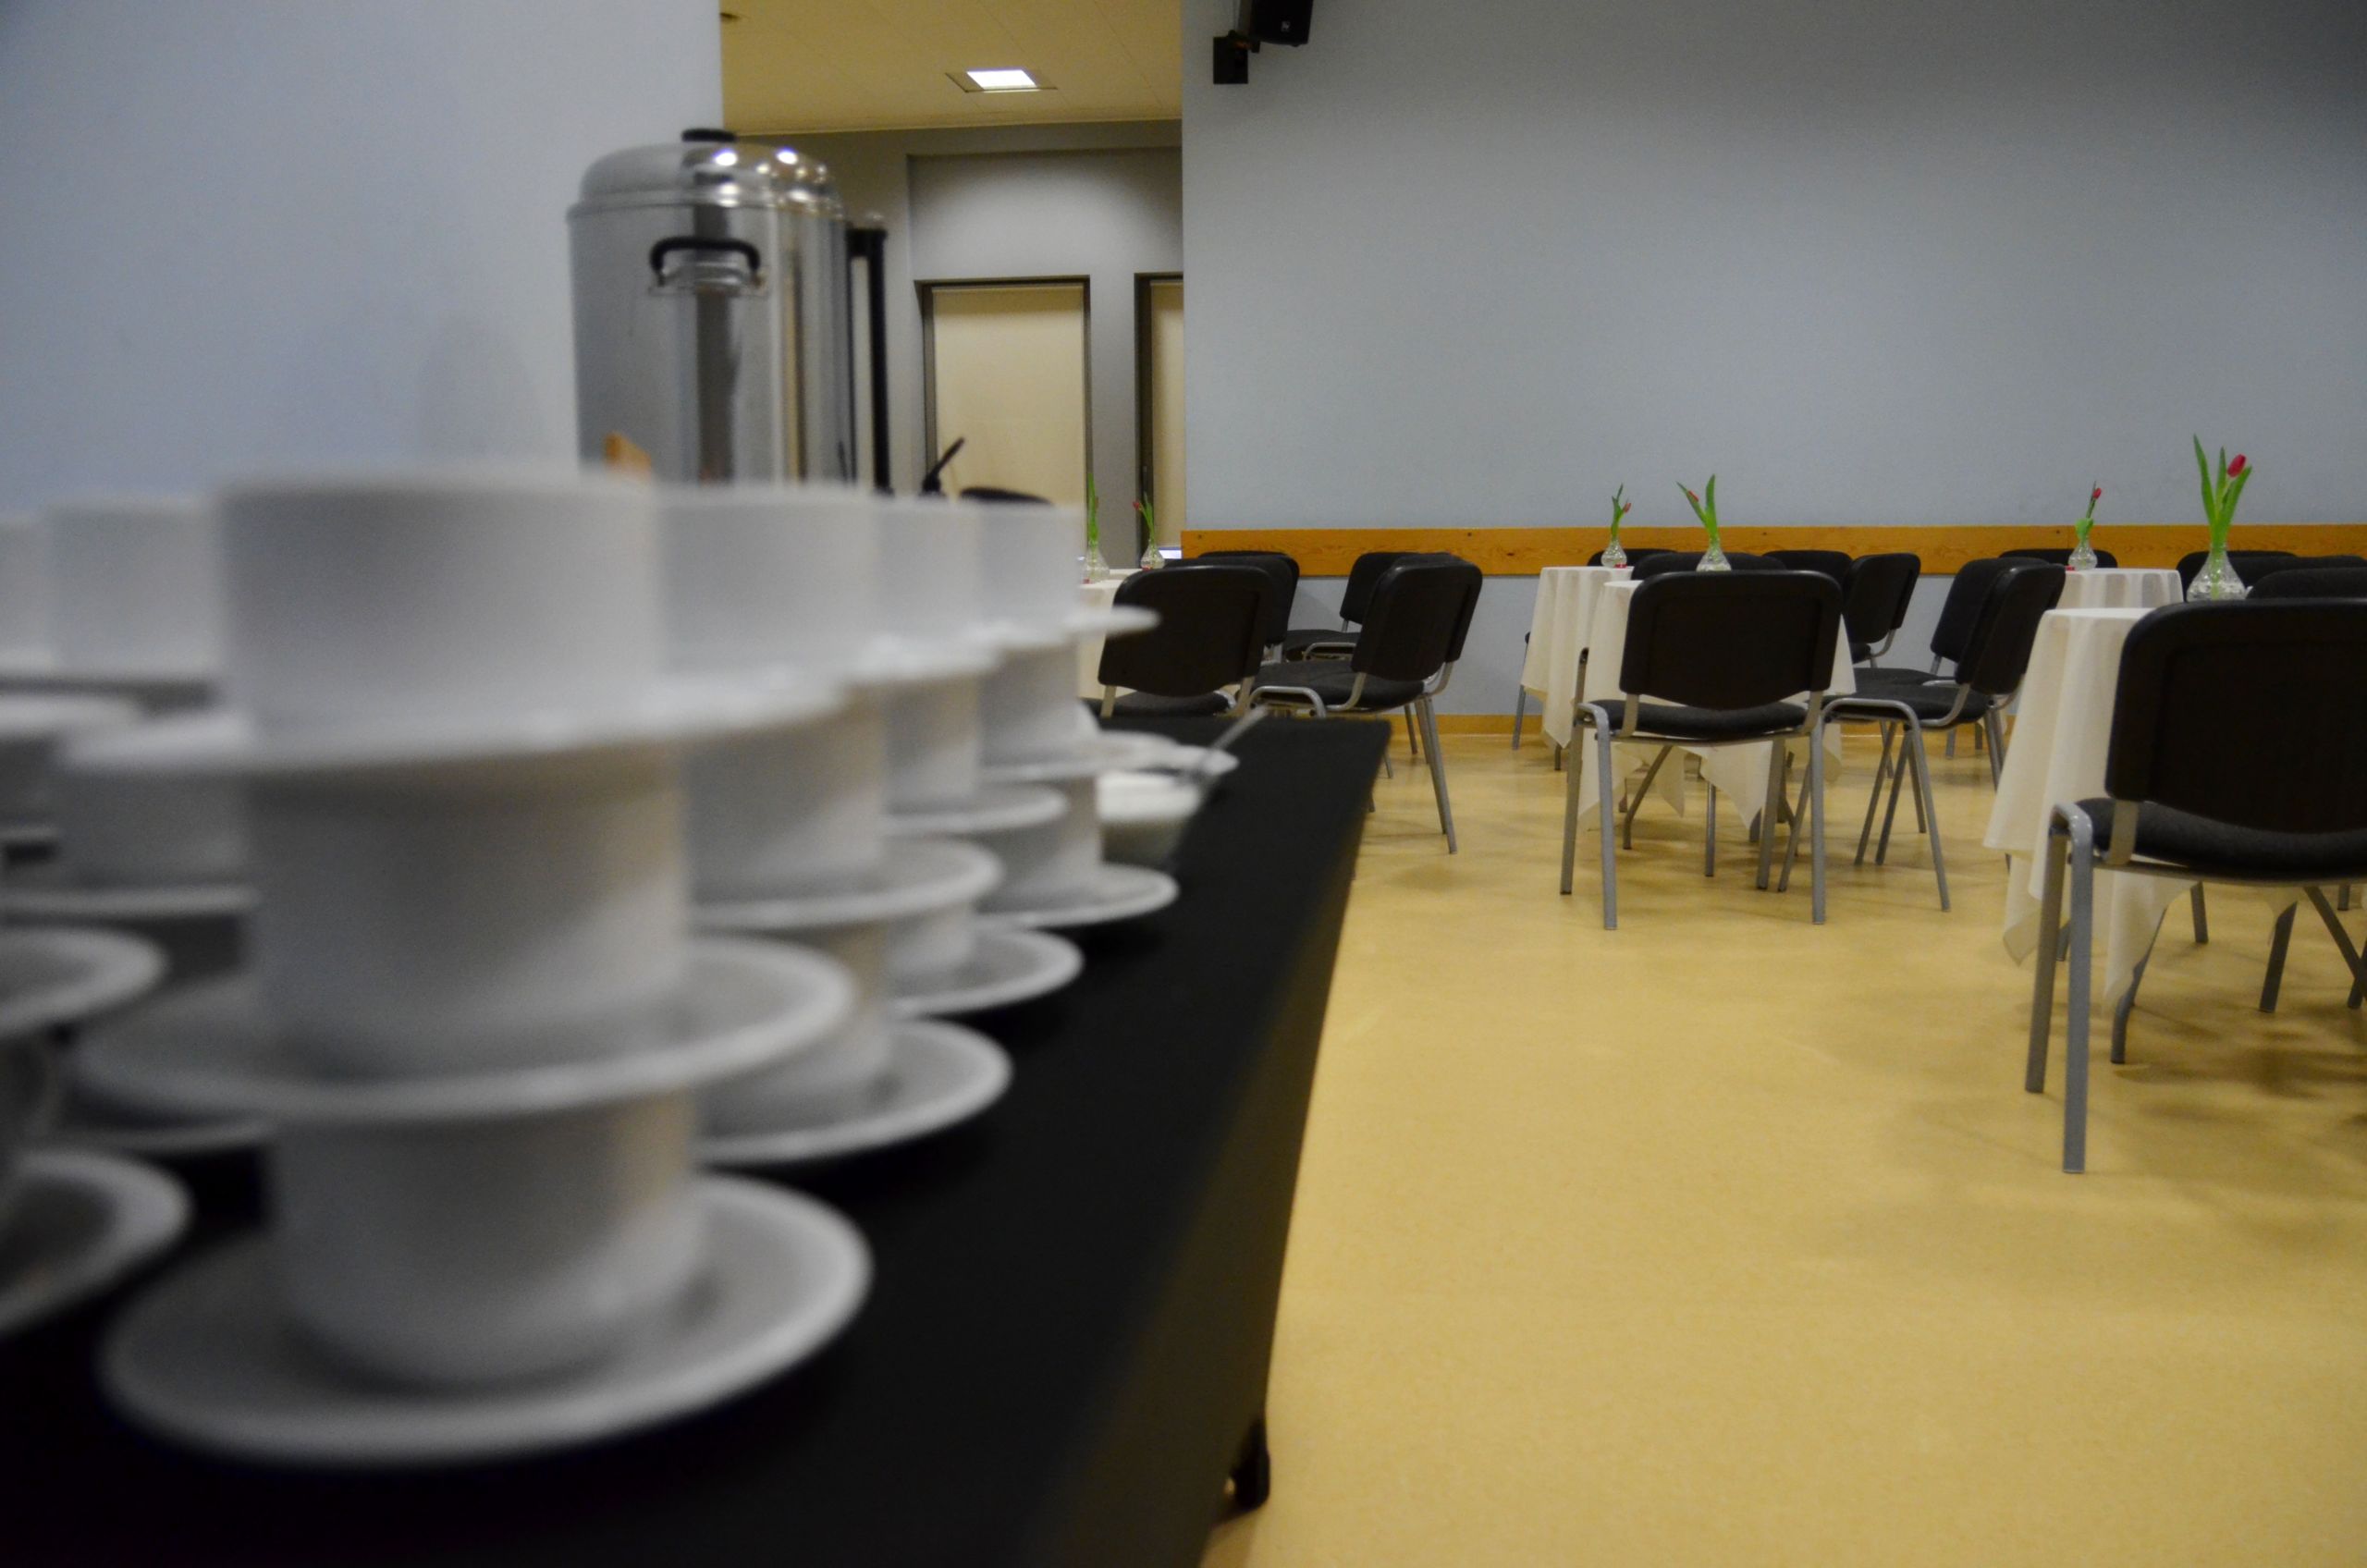 Zdjęcie przedstawiające salę kameralną - po lewej stronie znajduje się blat okryty czarnym obrusem. Na nim znajdują się poustawiane białe filiżanki oraz ekspresy do kawy oraz pojemniki z wodą. Po przeciwnej stronie sali znajdują się okrągłe stoły z krzesłami dookoła.